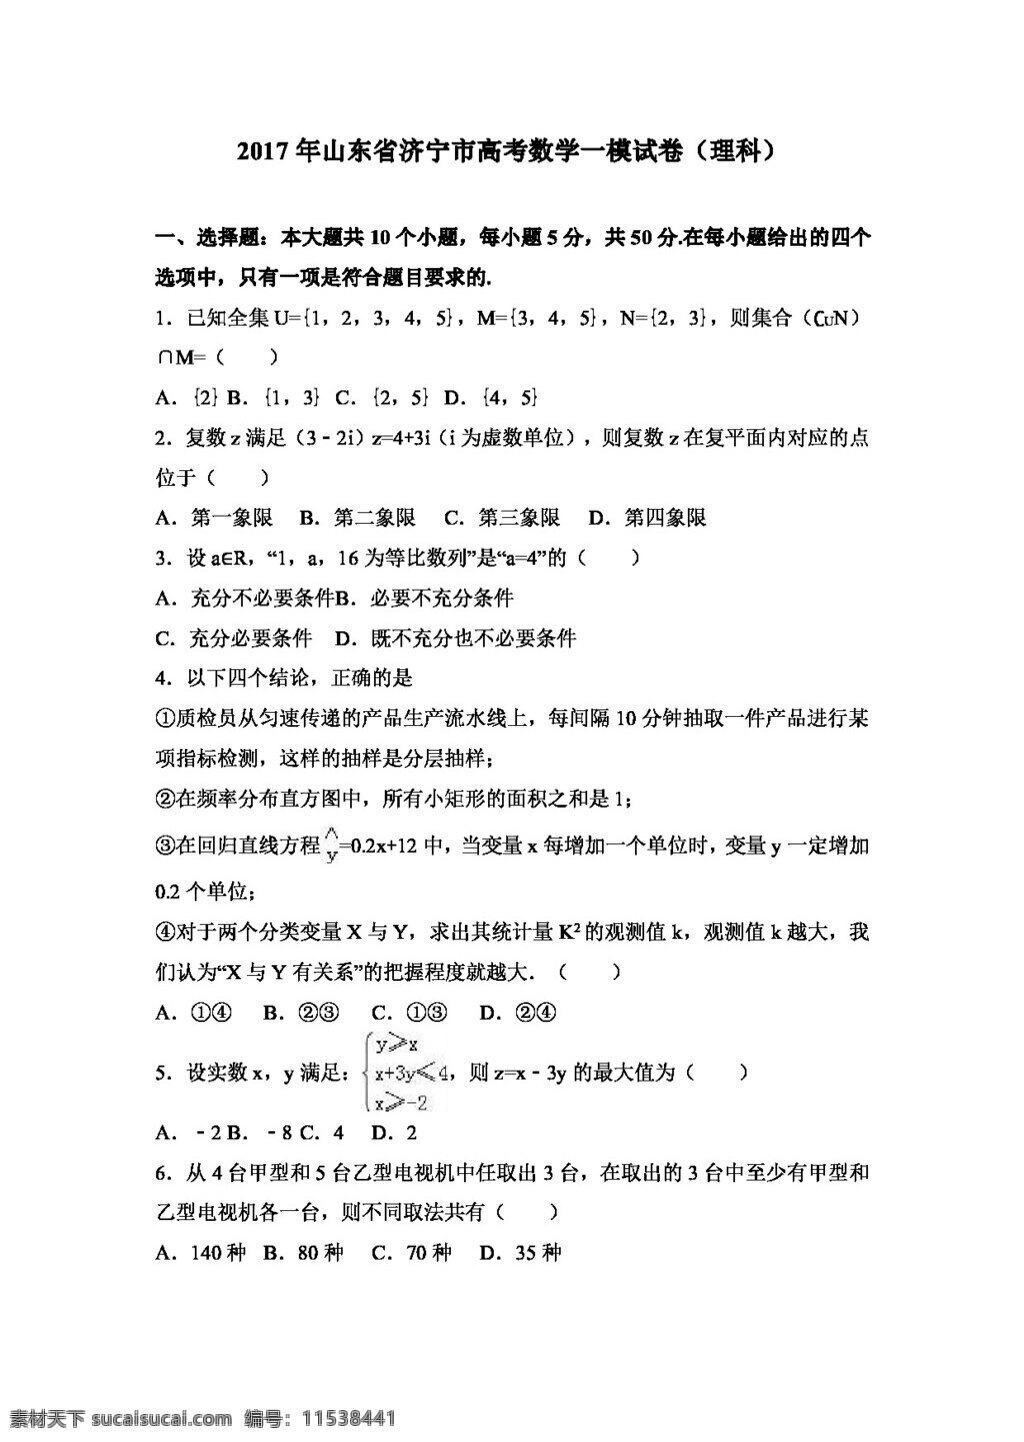 数学 人教 版 2017 年 山东省 济宁市 高考 模 试卷 理科 高考专区 人教版